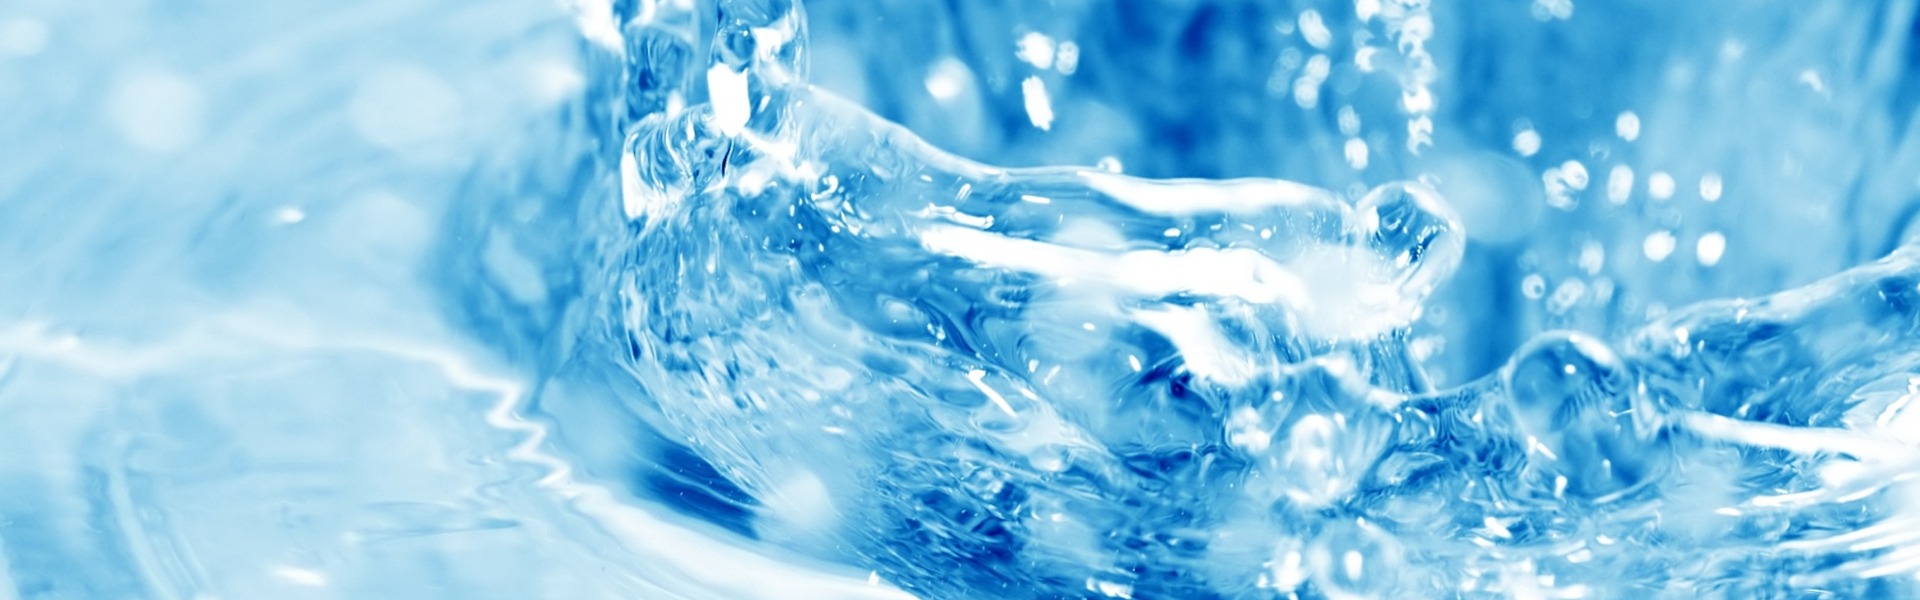 Innovación Hídrica: Más Allá del Agua Convencional